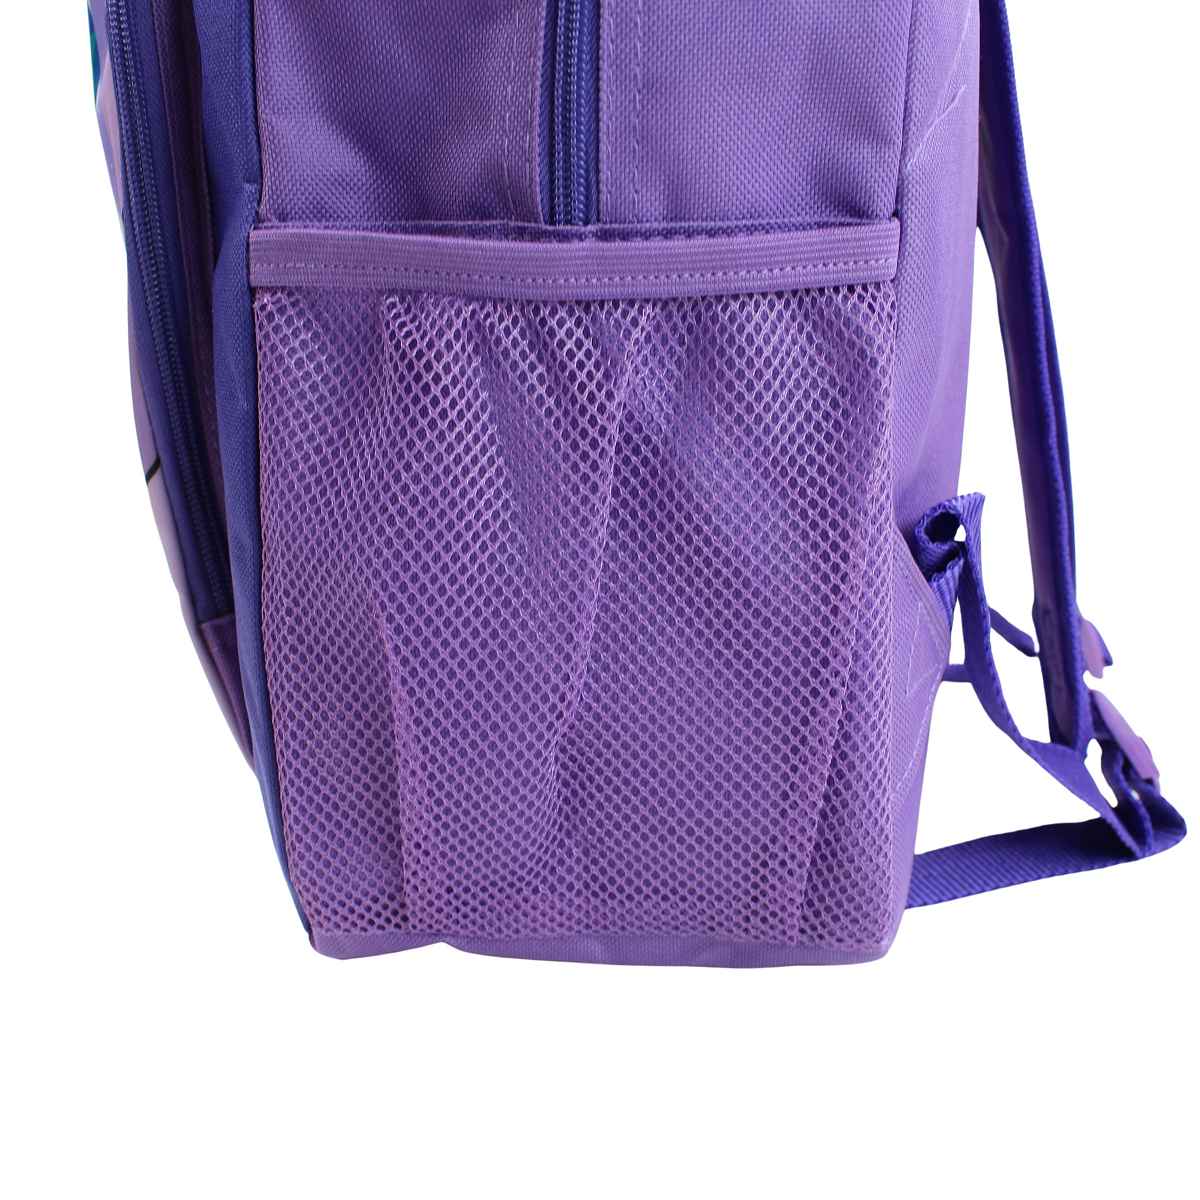 Disney Lilo und Stitch Mädchen Rucksack Schultasche Tasche 40x30x15 cm